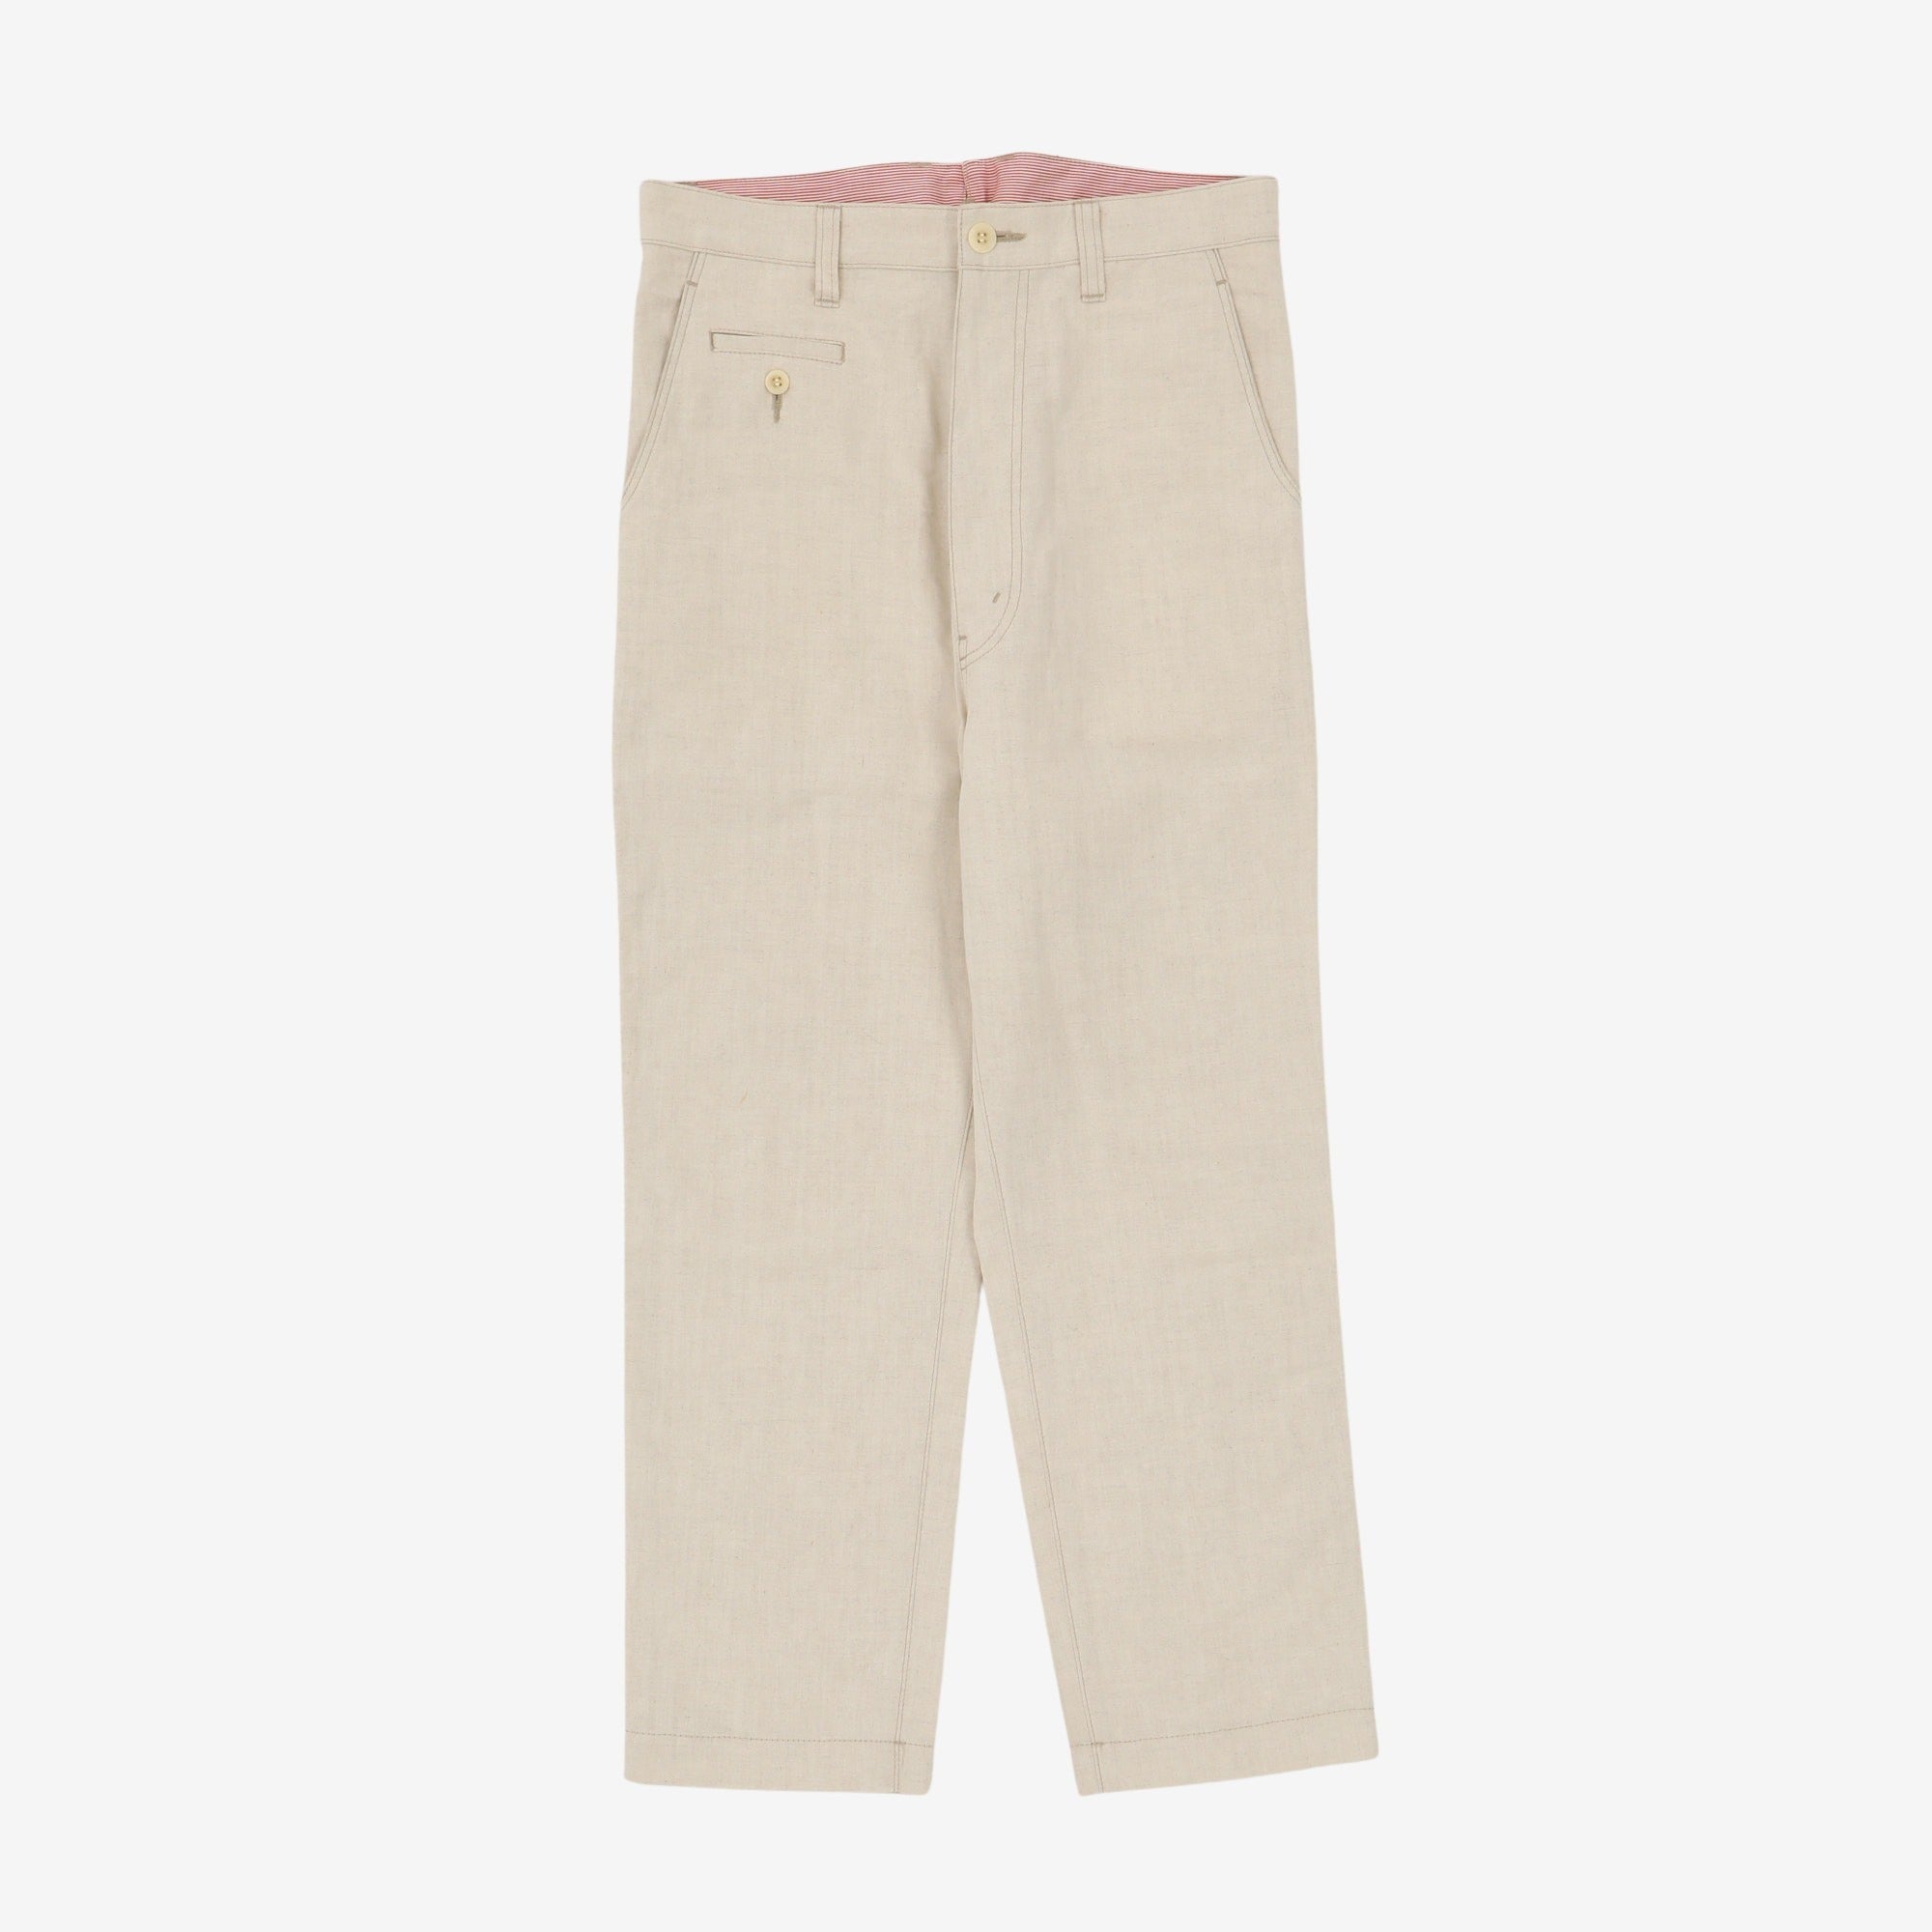 Cotton Linen Blend Canvas Trousers (32W x 26L)